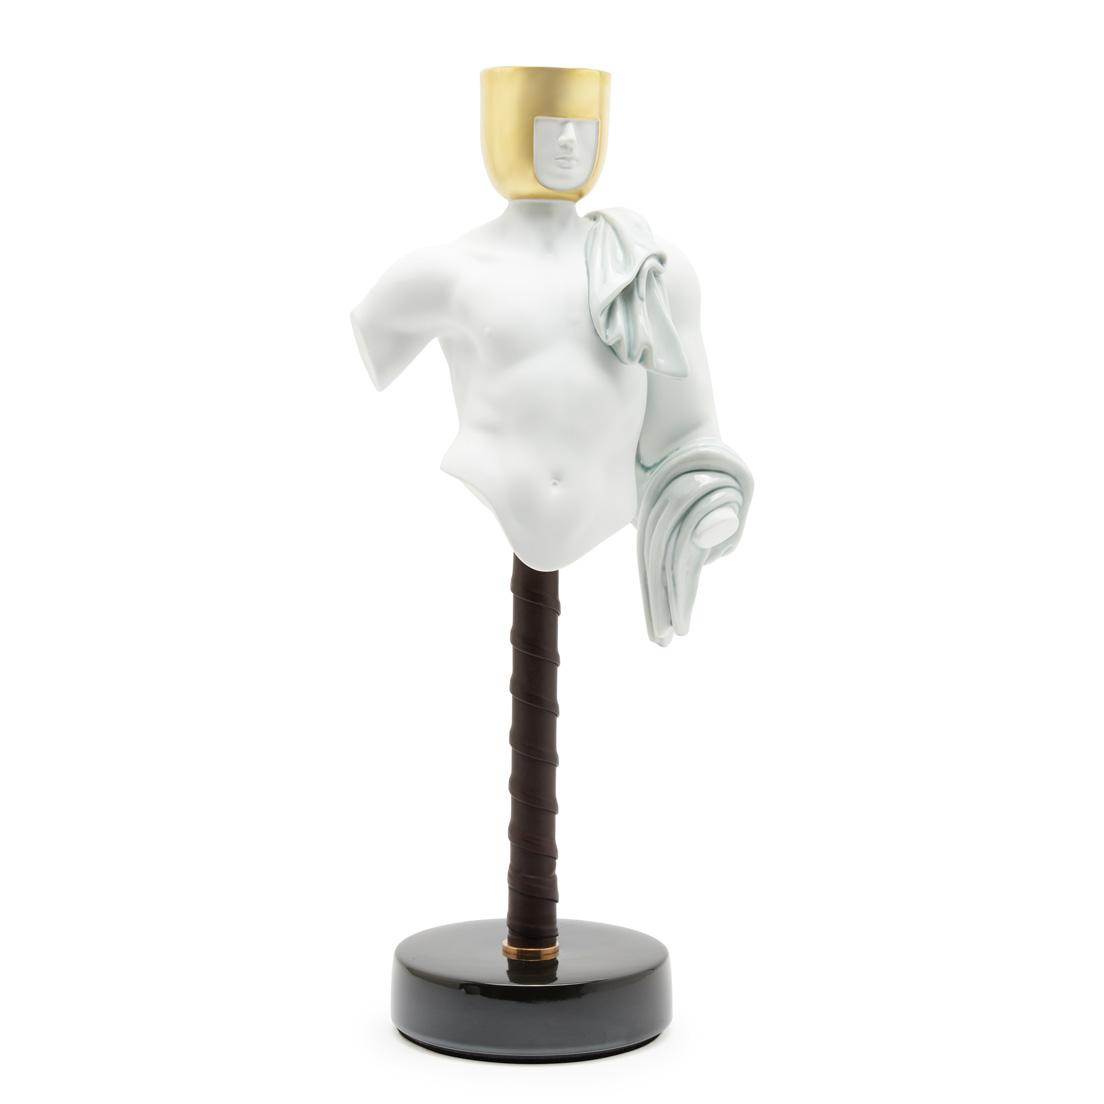 限定100個の《アマンテ キャンドルスタンド》（539,000円）は、金の兜とダークブラウンのレザー巻きの支柱を備えたシリアルナンバー入り。高さ45cm、キャンドル18個付き （フレグランス3種各6個）。たくましい男性像は、アマンテ＝恋人の名にふさわしくアーティスティックな佇まい。